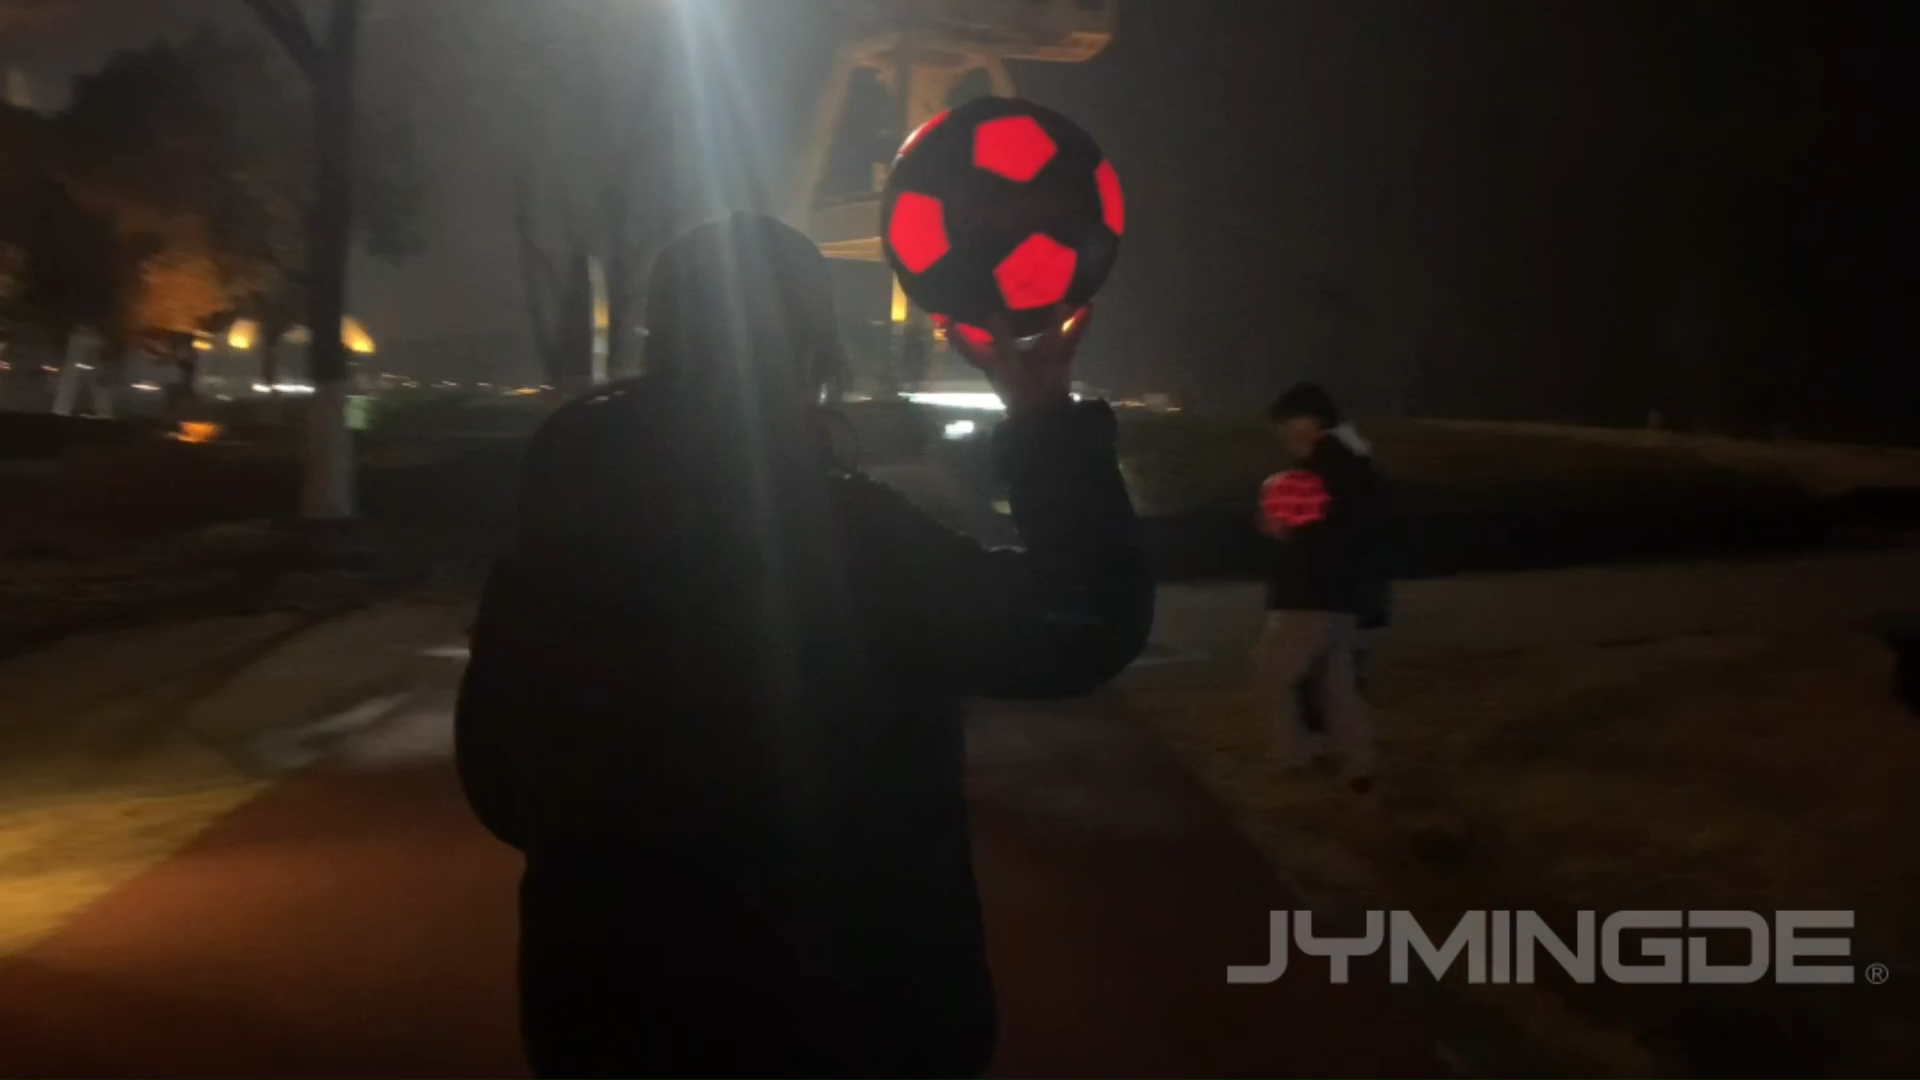 Luminous glow in the dark durable LED light up rubber LED custom soccer ball1